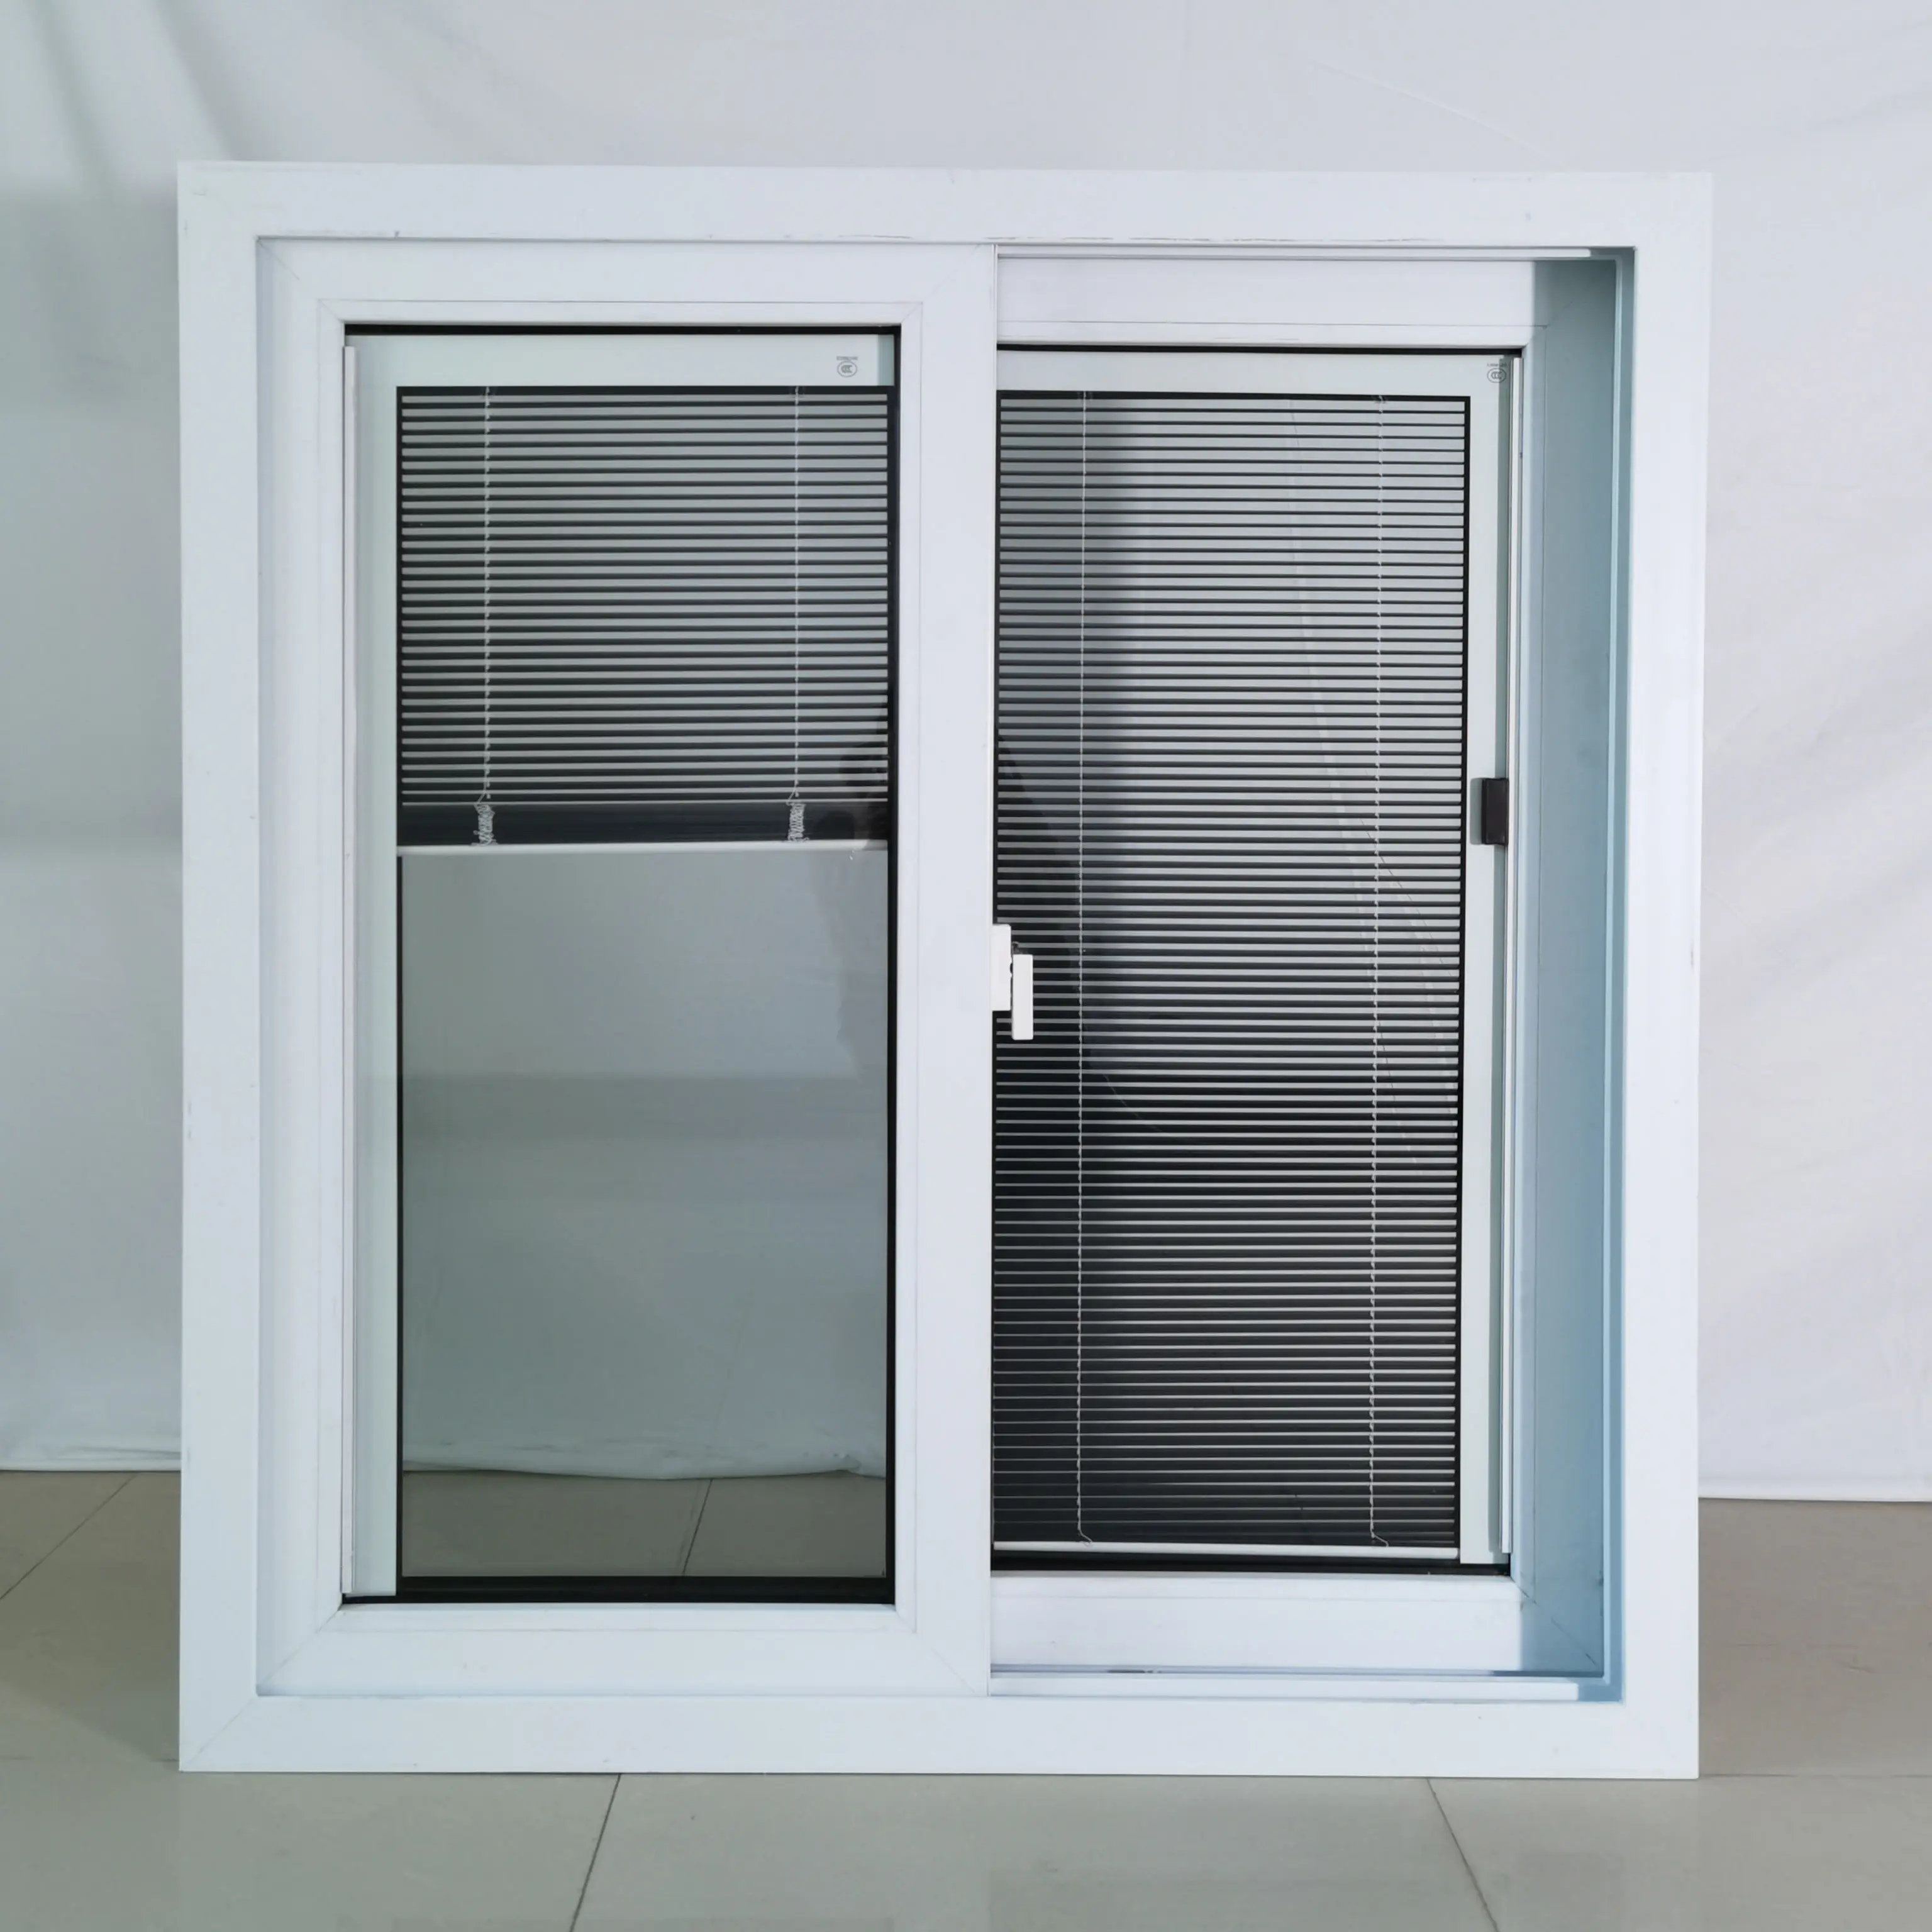 زجاج مزدوج الطي, زجاج مزدوج الطي نافذة أفقية قابلة للطي نافذة محلية ثنائية الطي تركيا نافذة ثنائية الطي